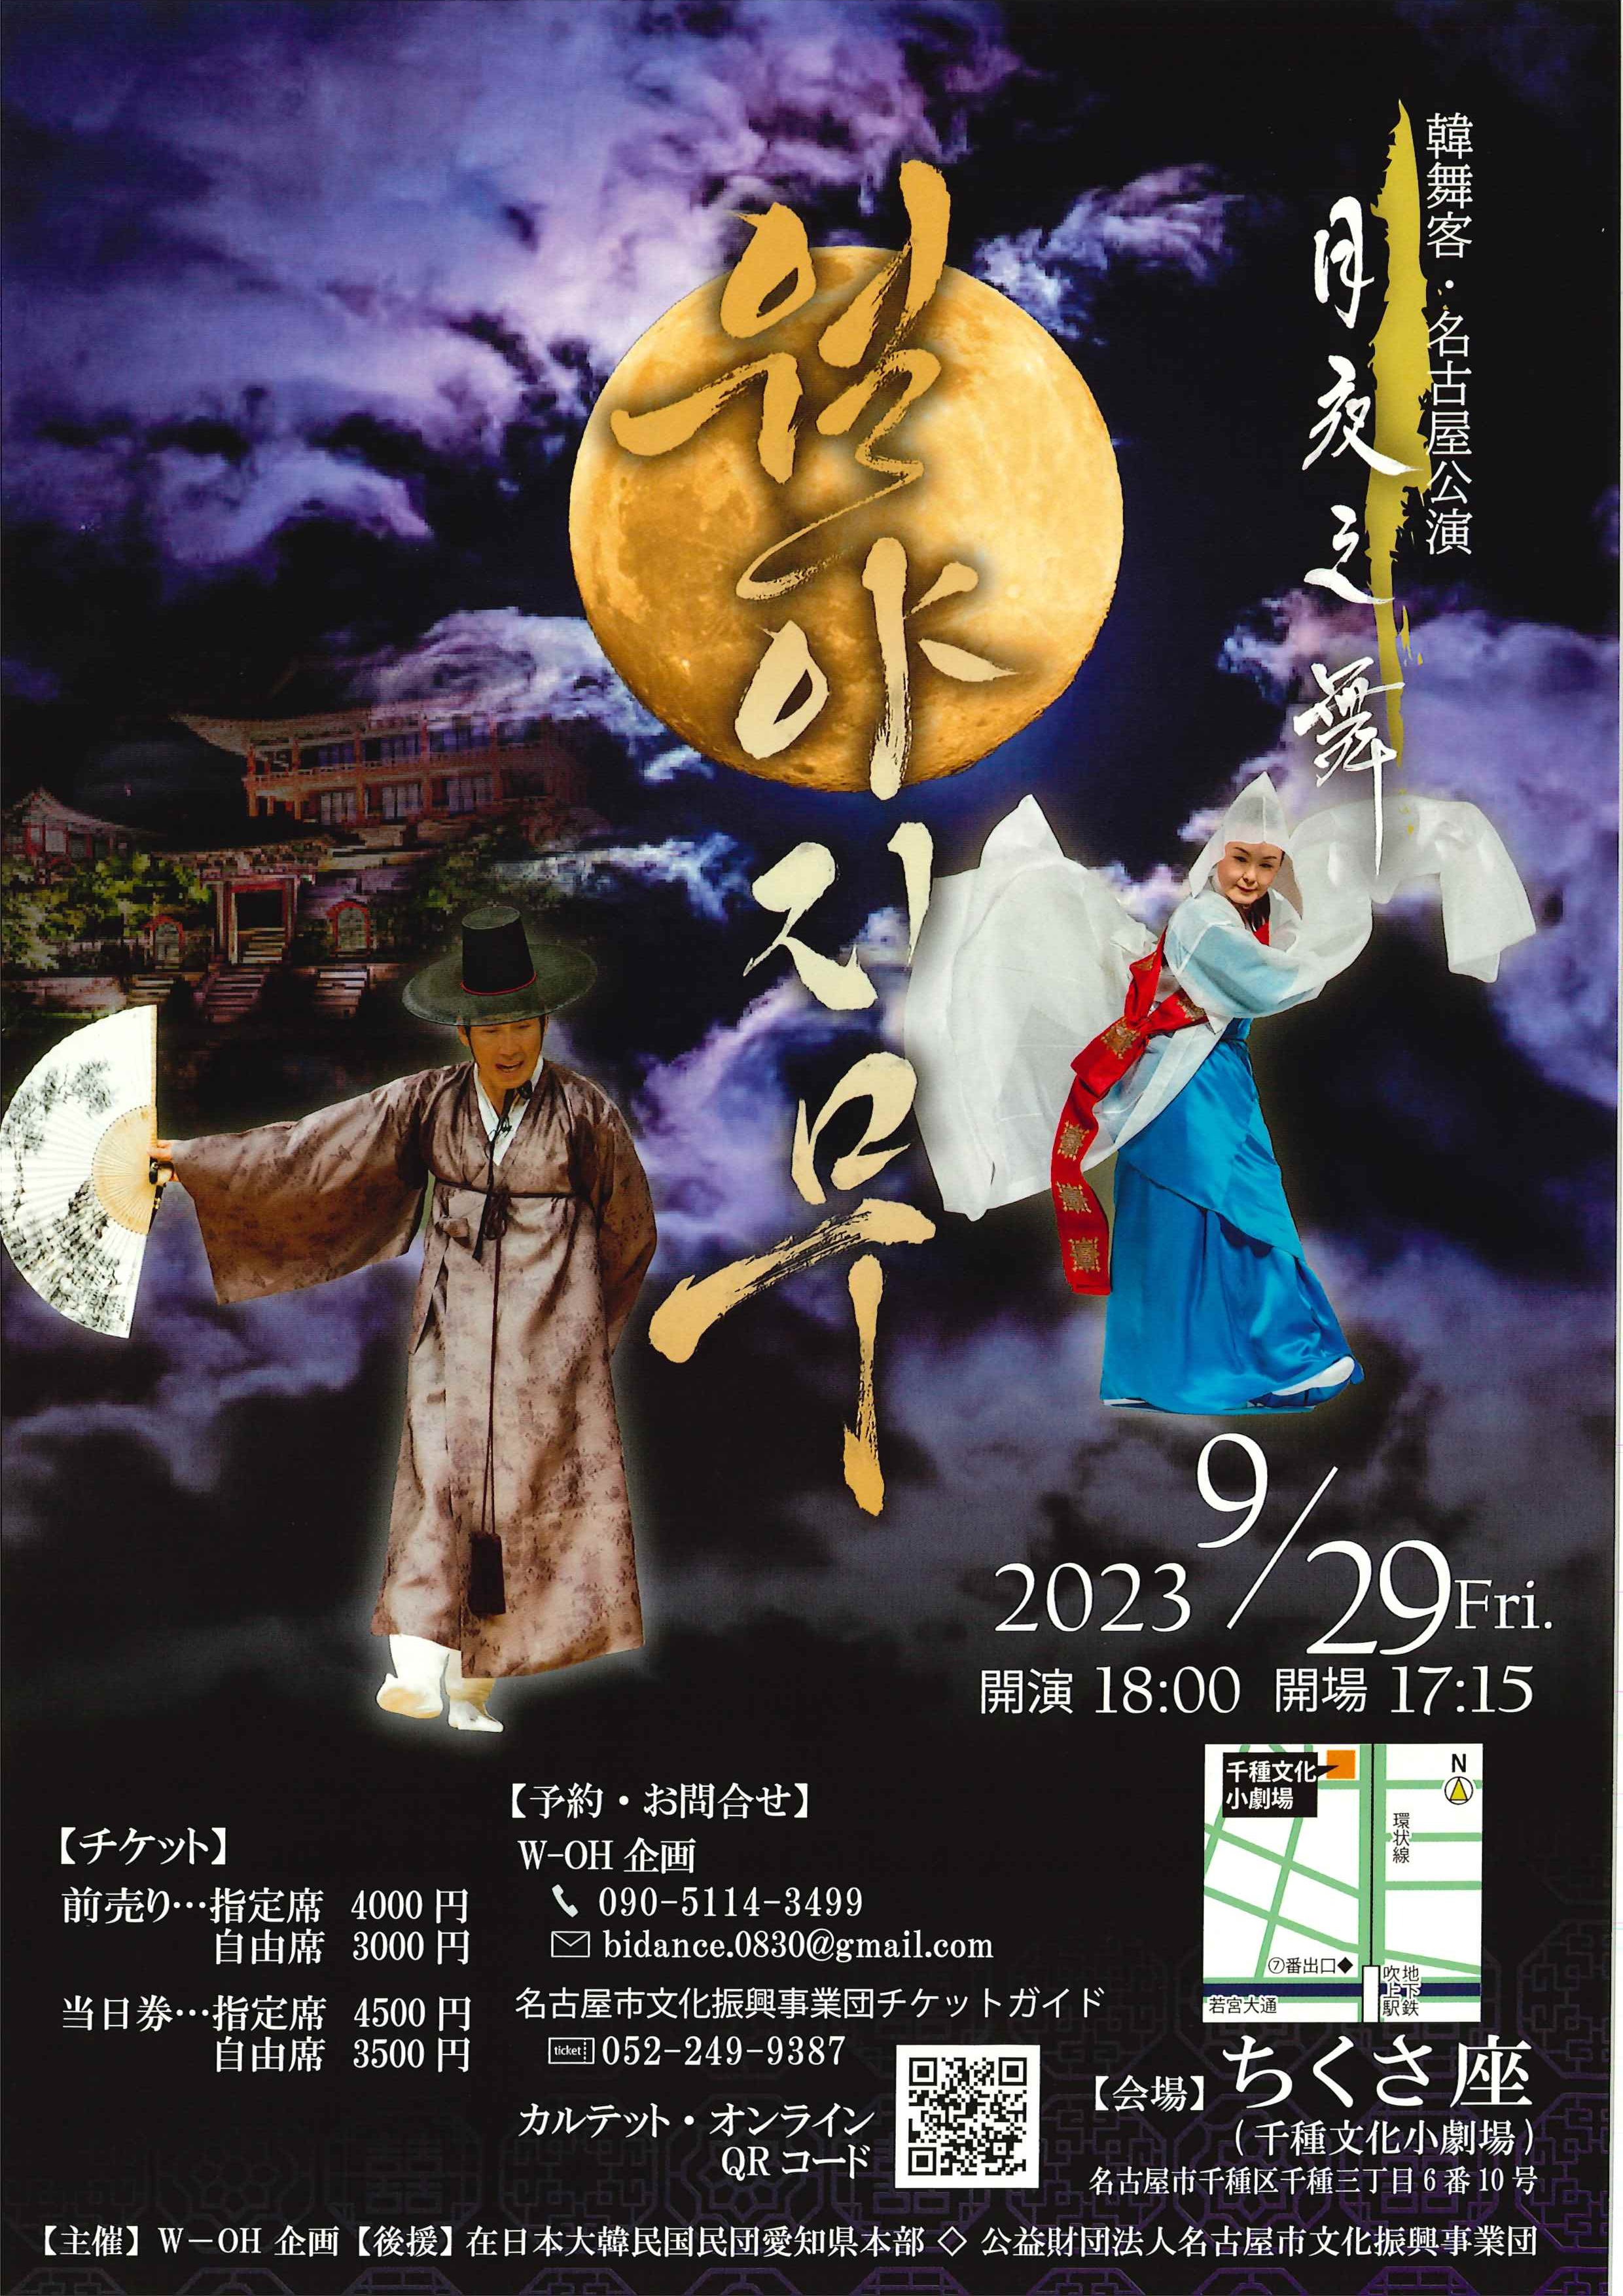 韓舞客名古屋公演「月夜之舞」のチラシ